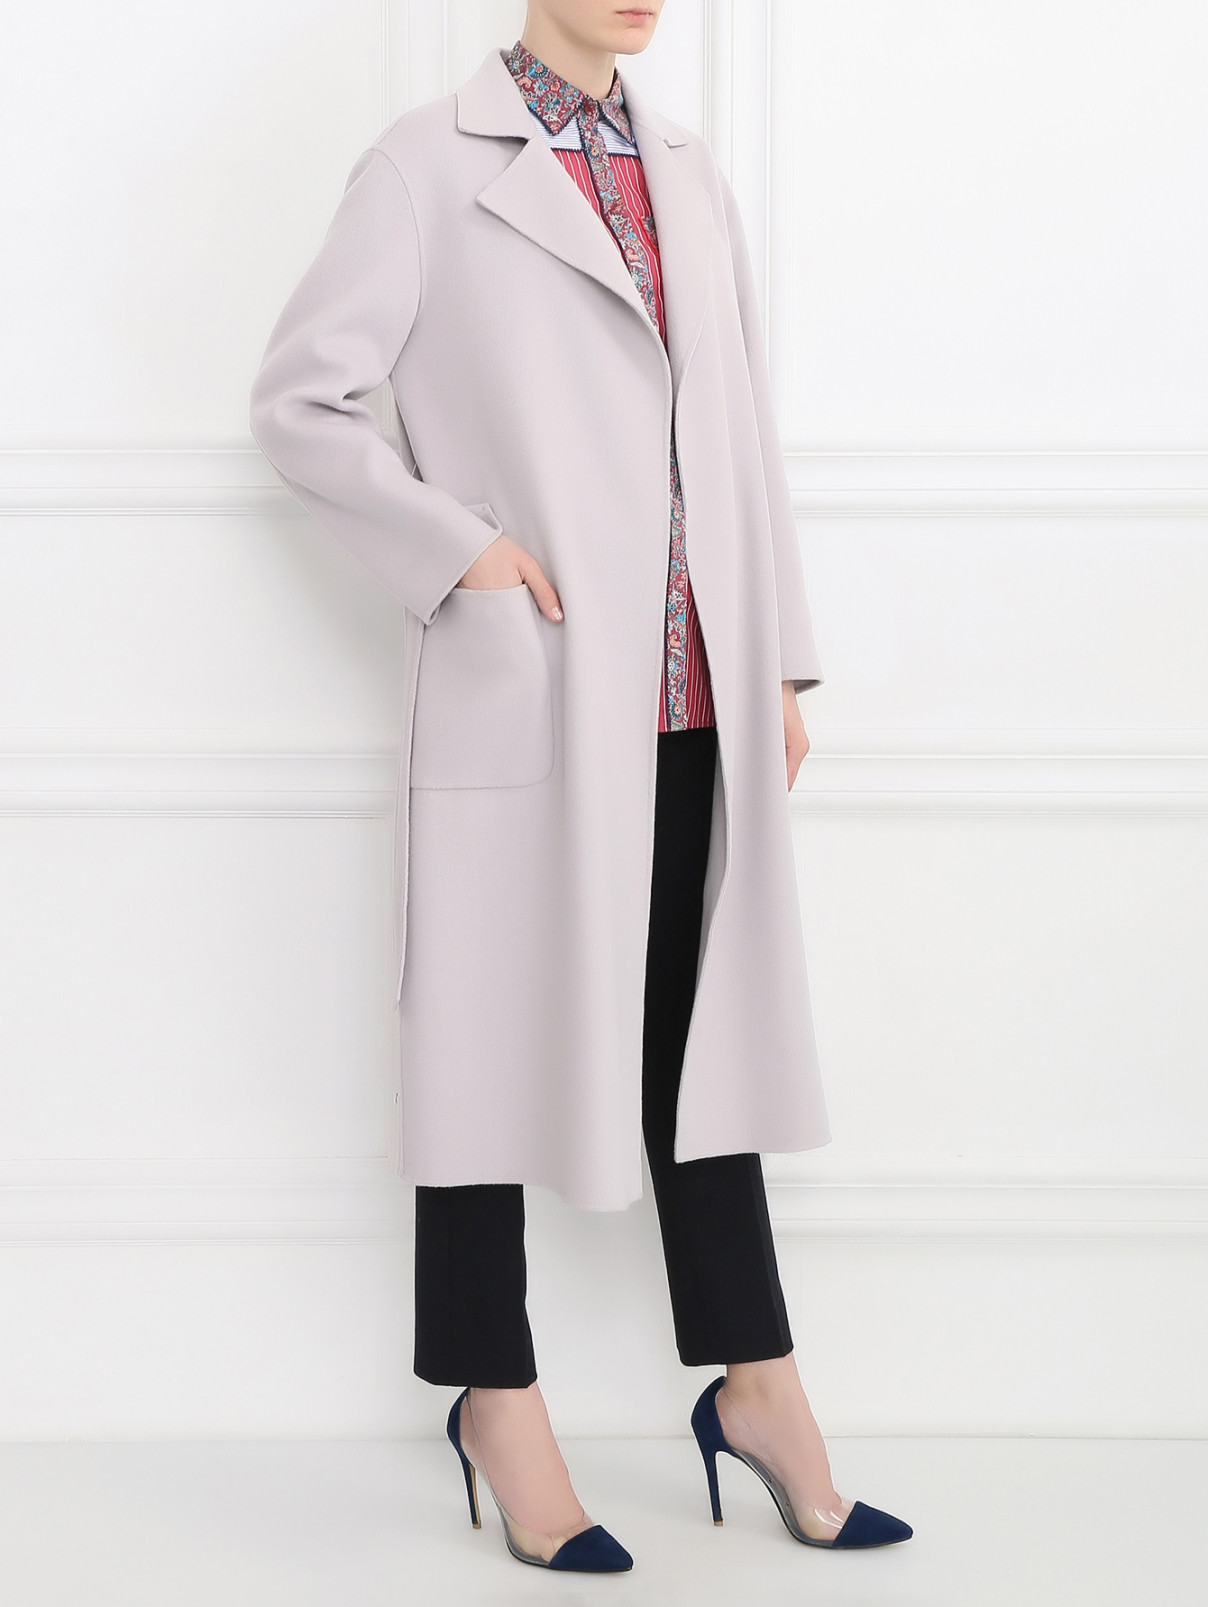 Пальто Armani Collezioni  –  Модель Общий вид  – Цвет:  Серый